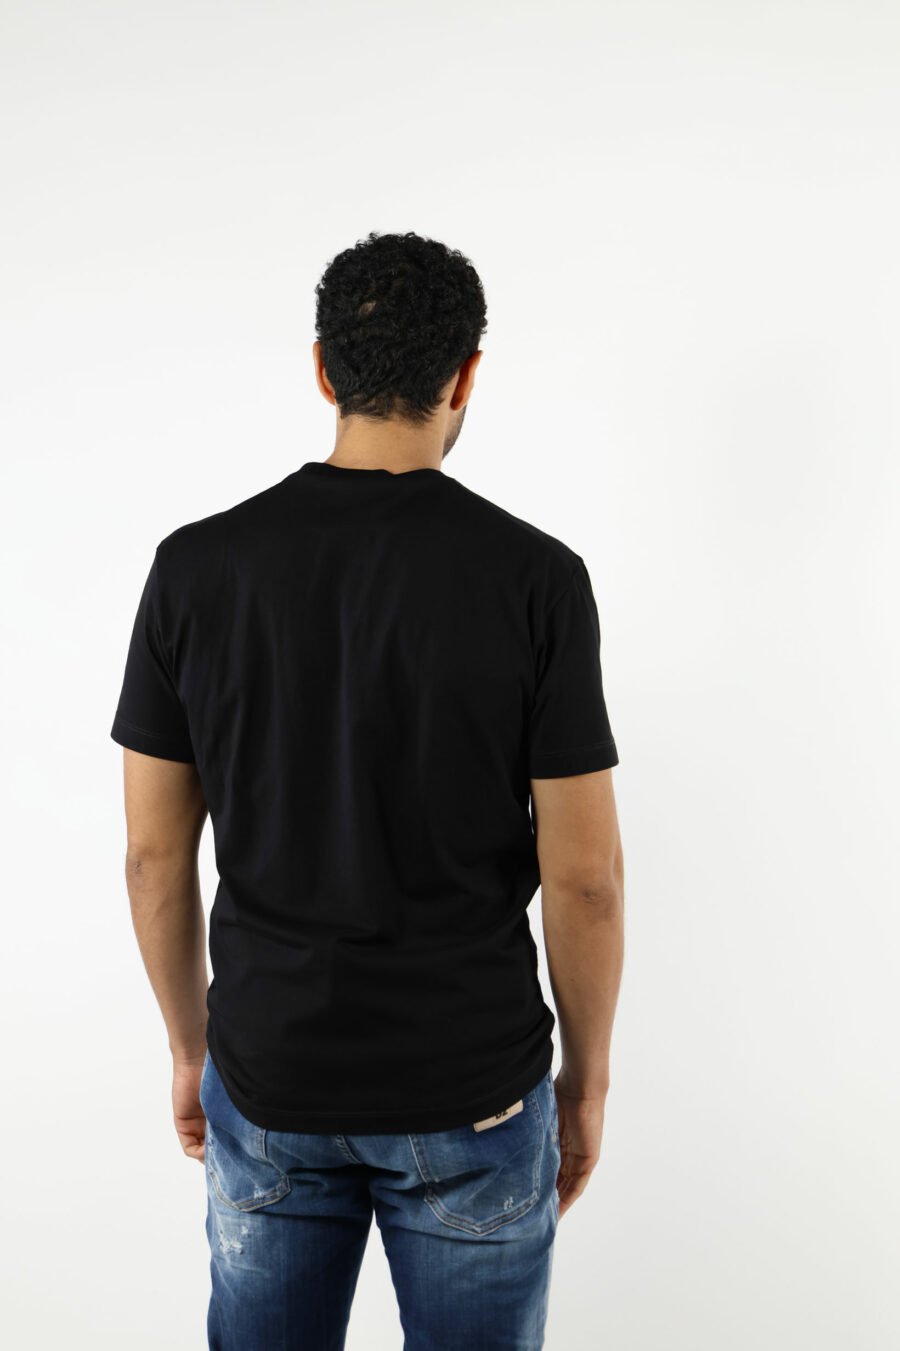 Camiseta negra con maxilogo "top" - 111170